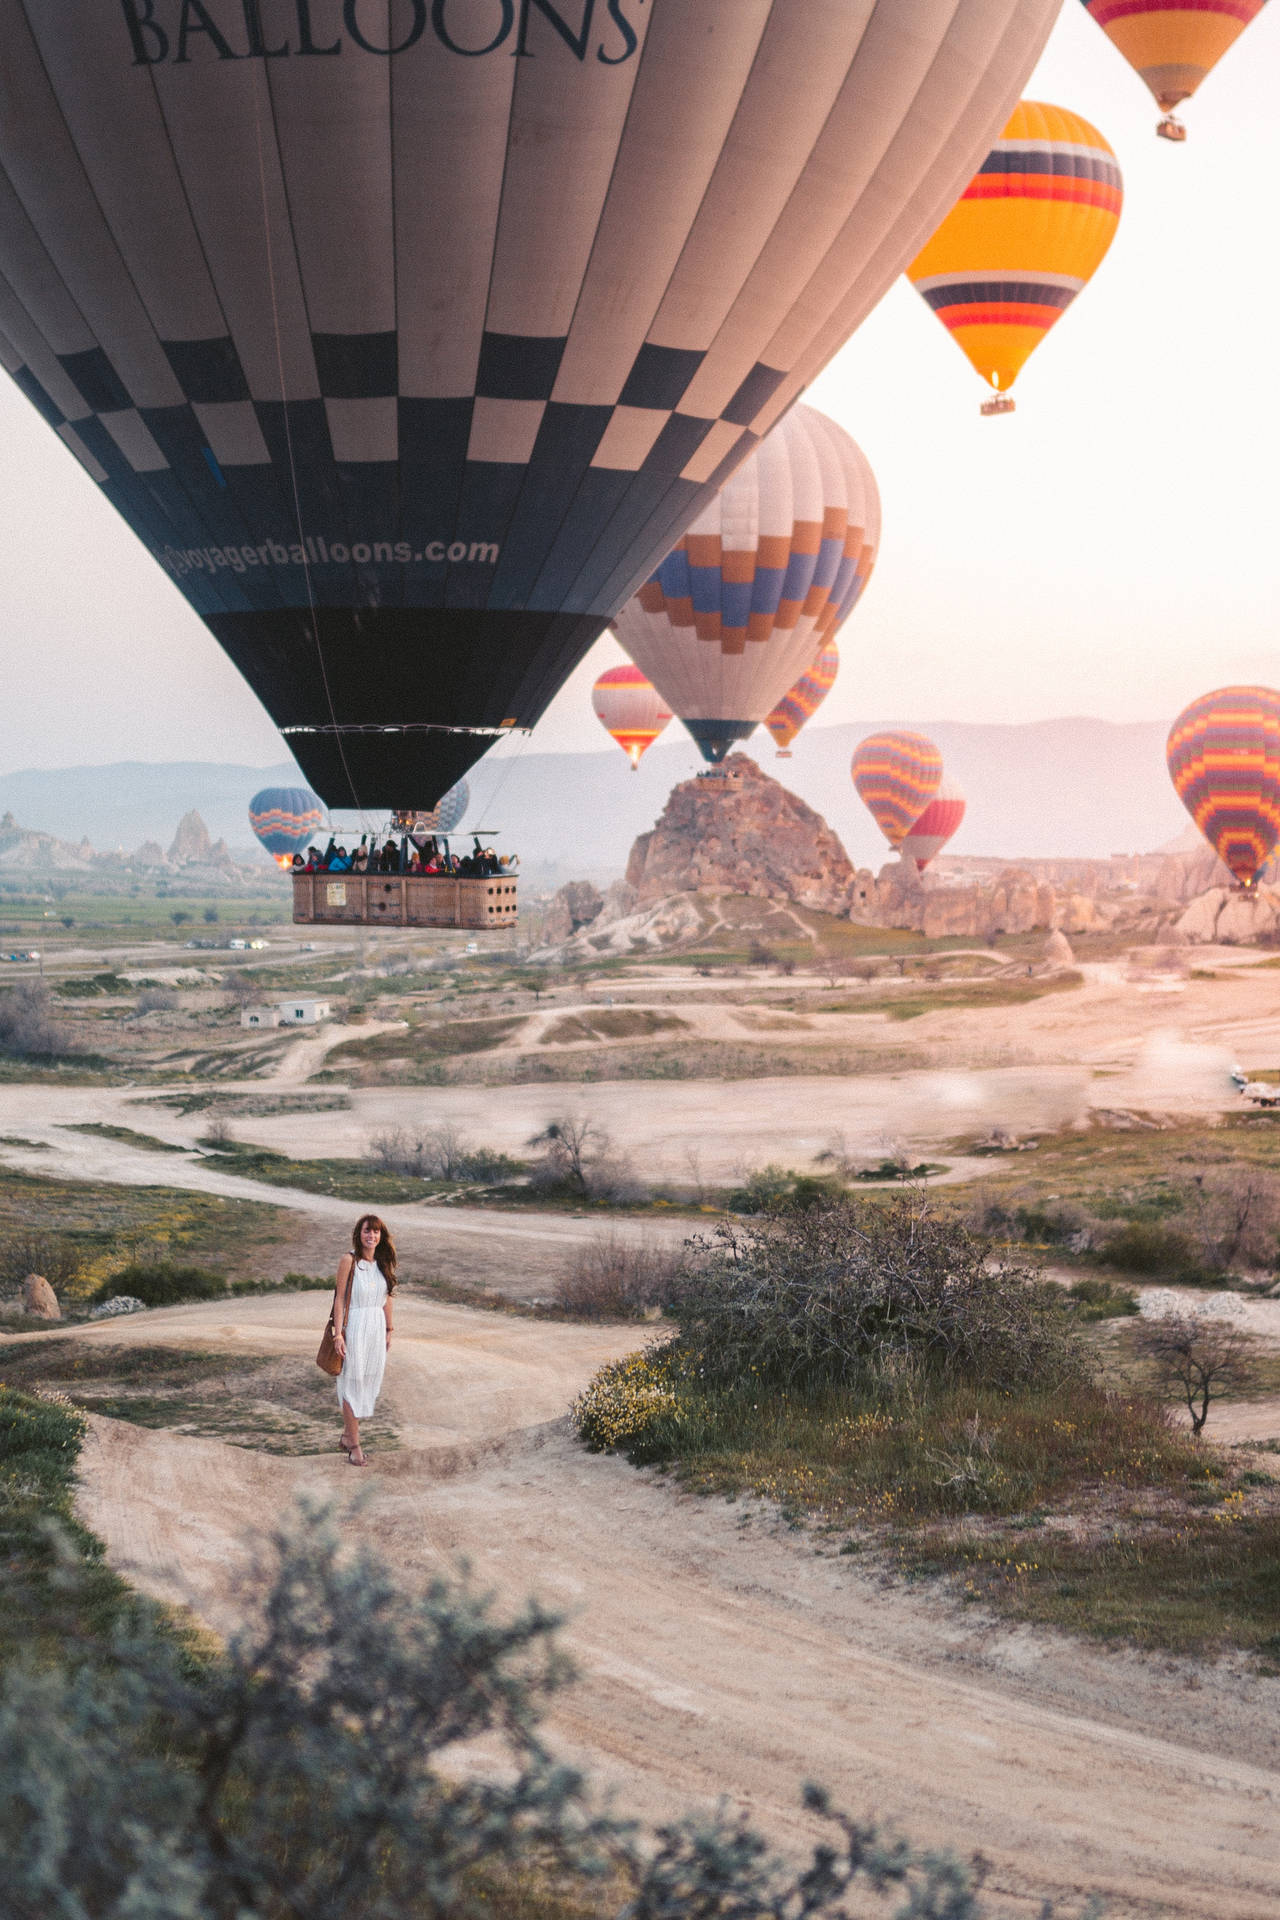 Cappadocia Woman Below Balloons Wallpaper